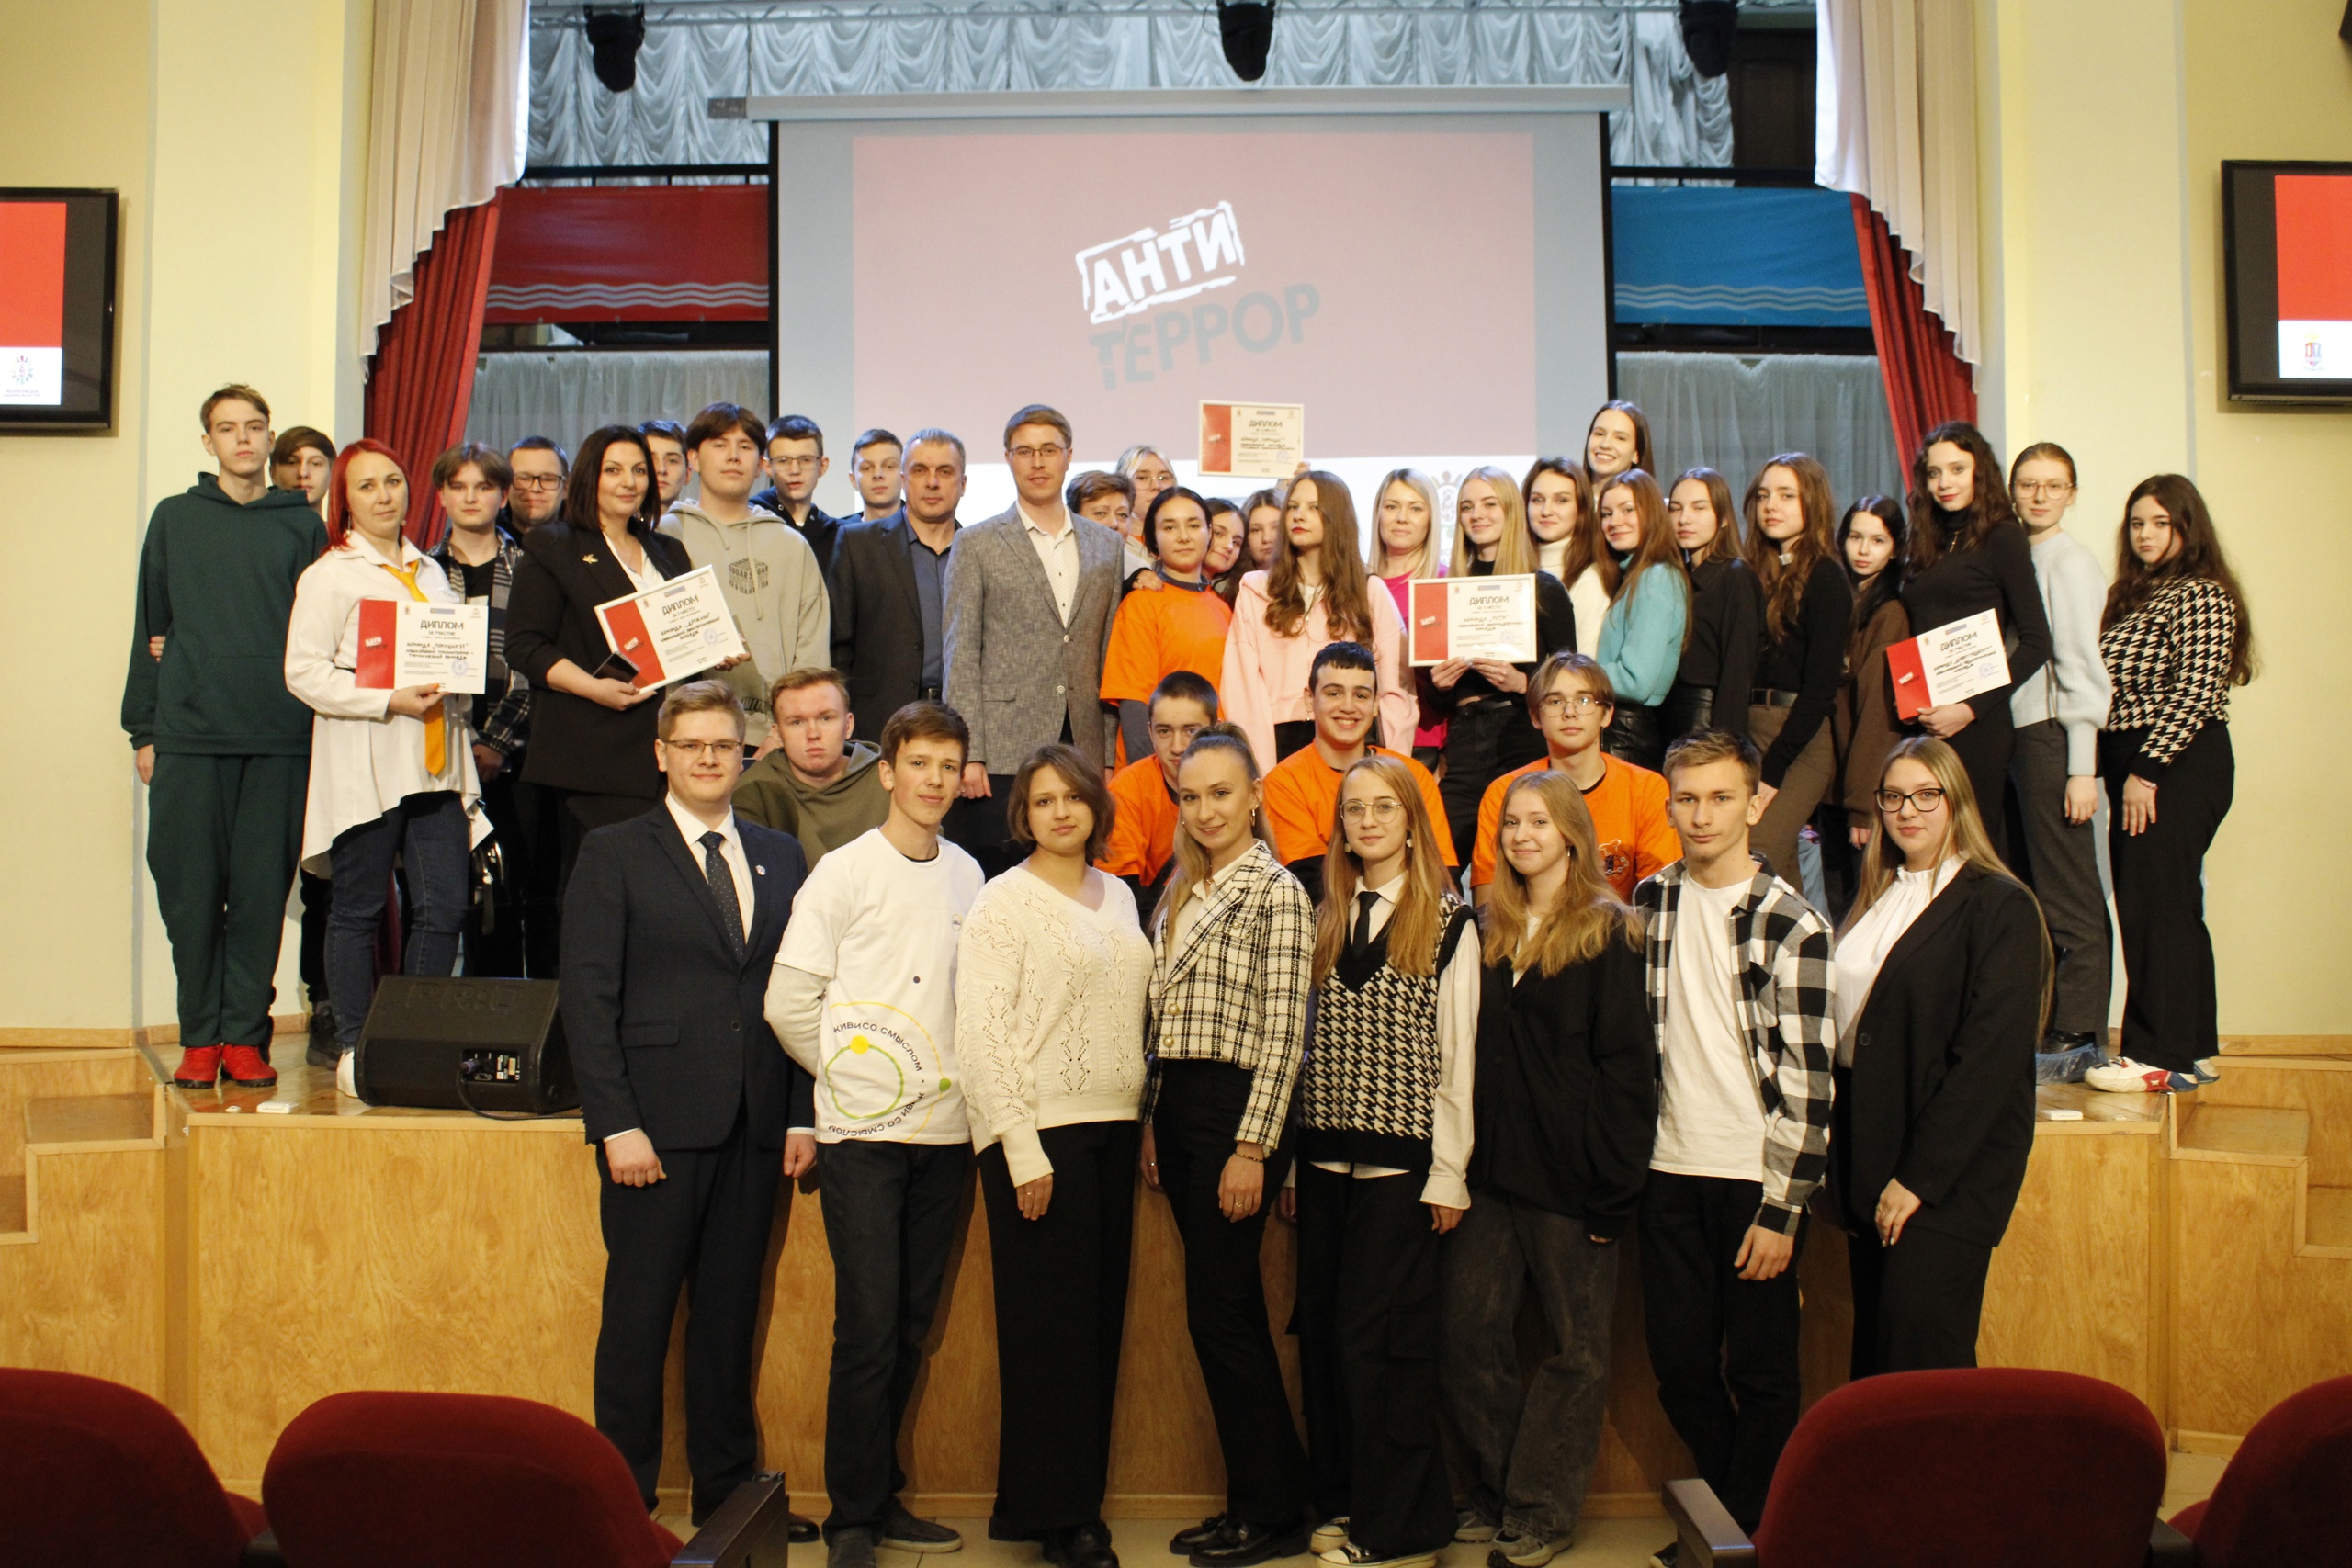 Ивановские студенты приняли участие в городской квест-игре «Антитеррор».